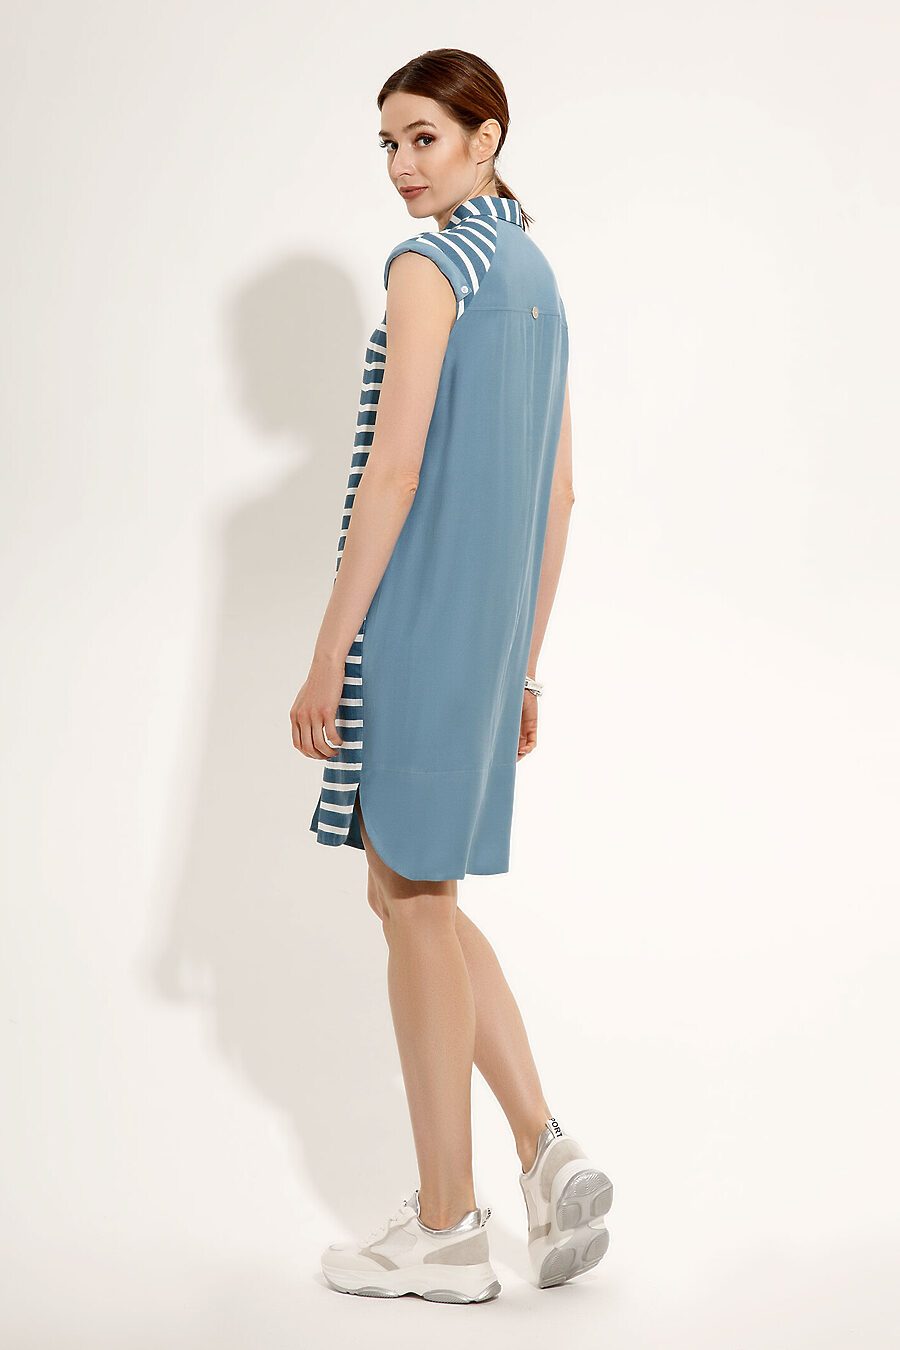 Платье для женщин PANDA 683571 купить оптом от производителя. Совместная покупка женской одежды в OptMoyo